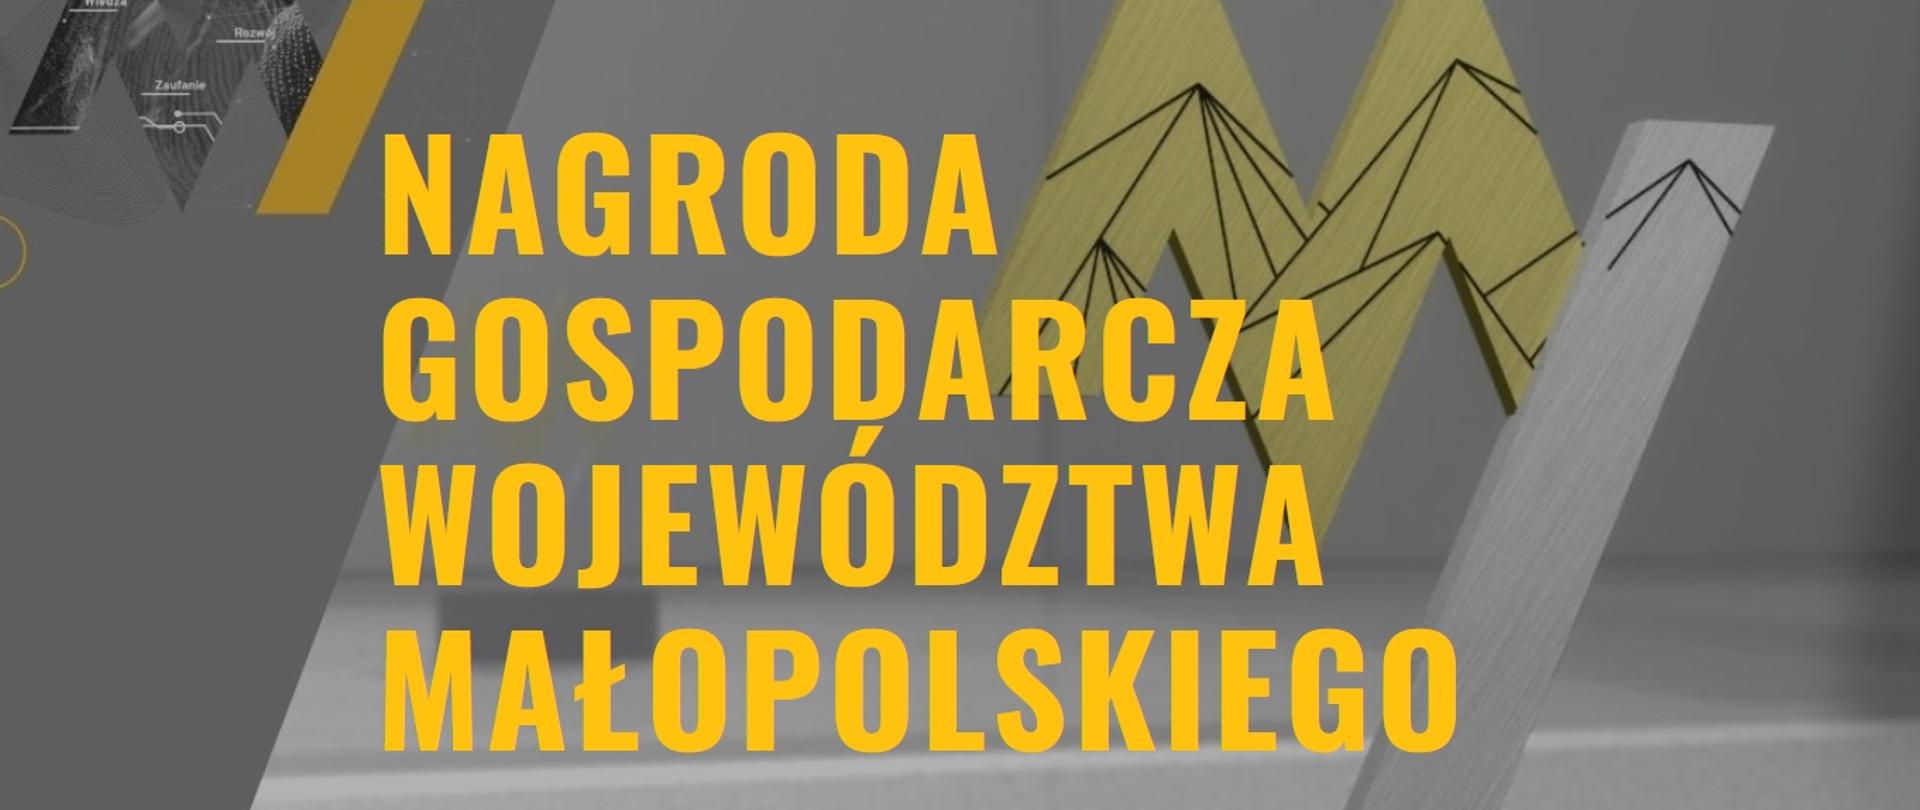 Zdjęcie przedstawia tło w szarych odcieniach z żółtym, drukowanym napisem: nagroda Gospodarcza Województwa Małopolskiego oraz mniejszy czarny napis Pochwal się. W tle ikona statuetki. 